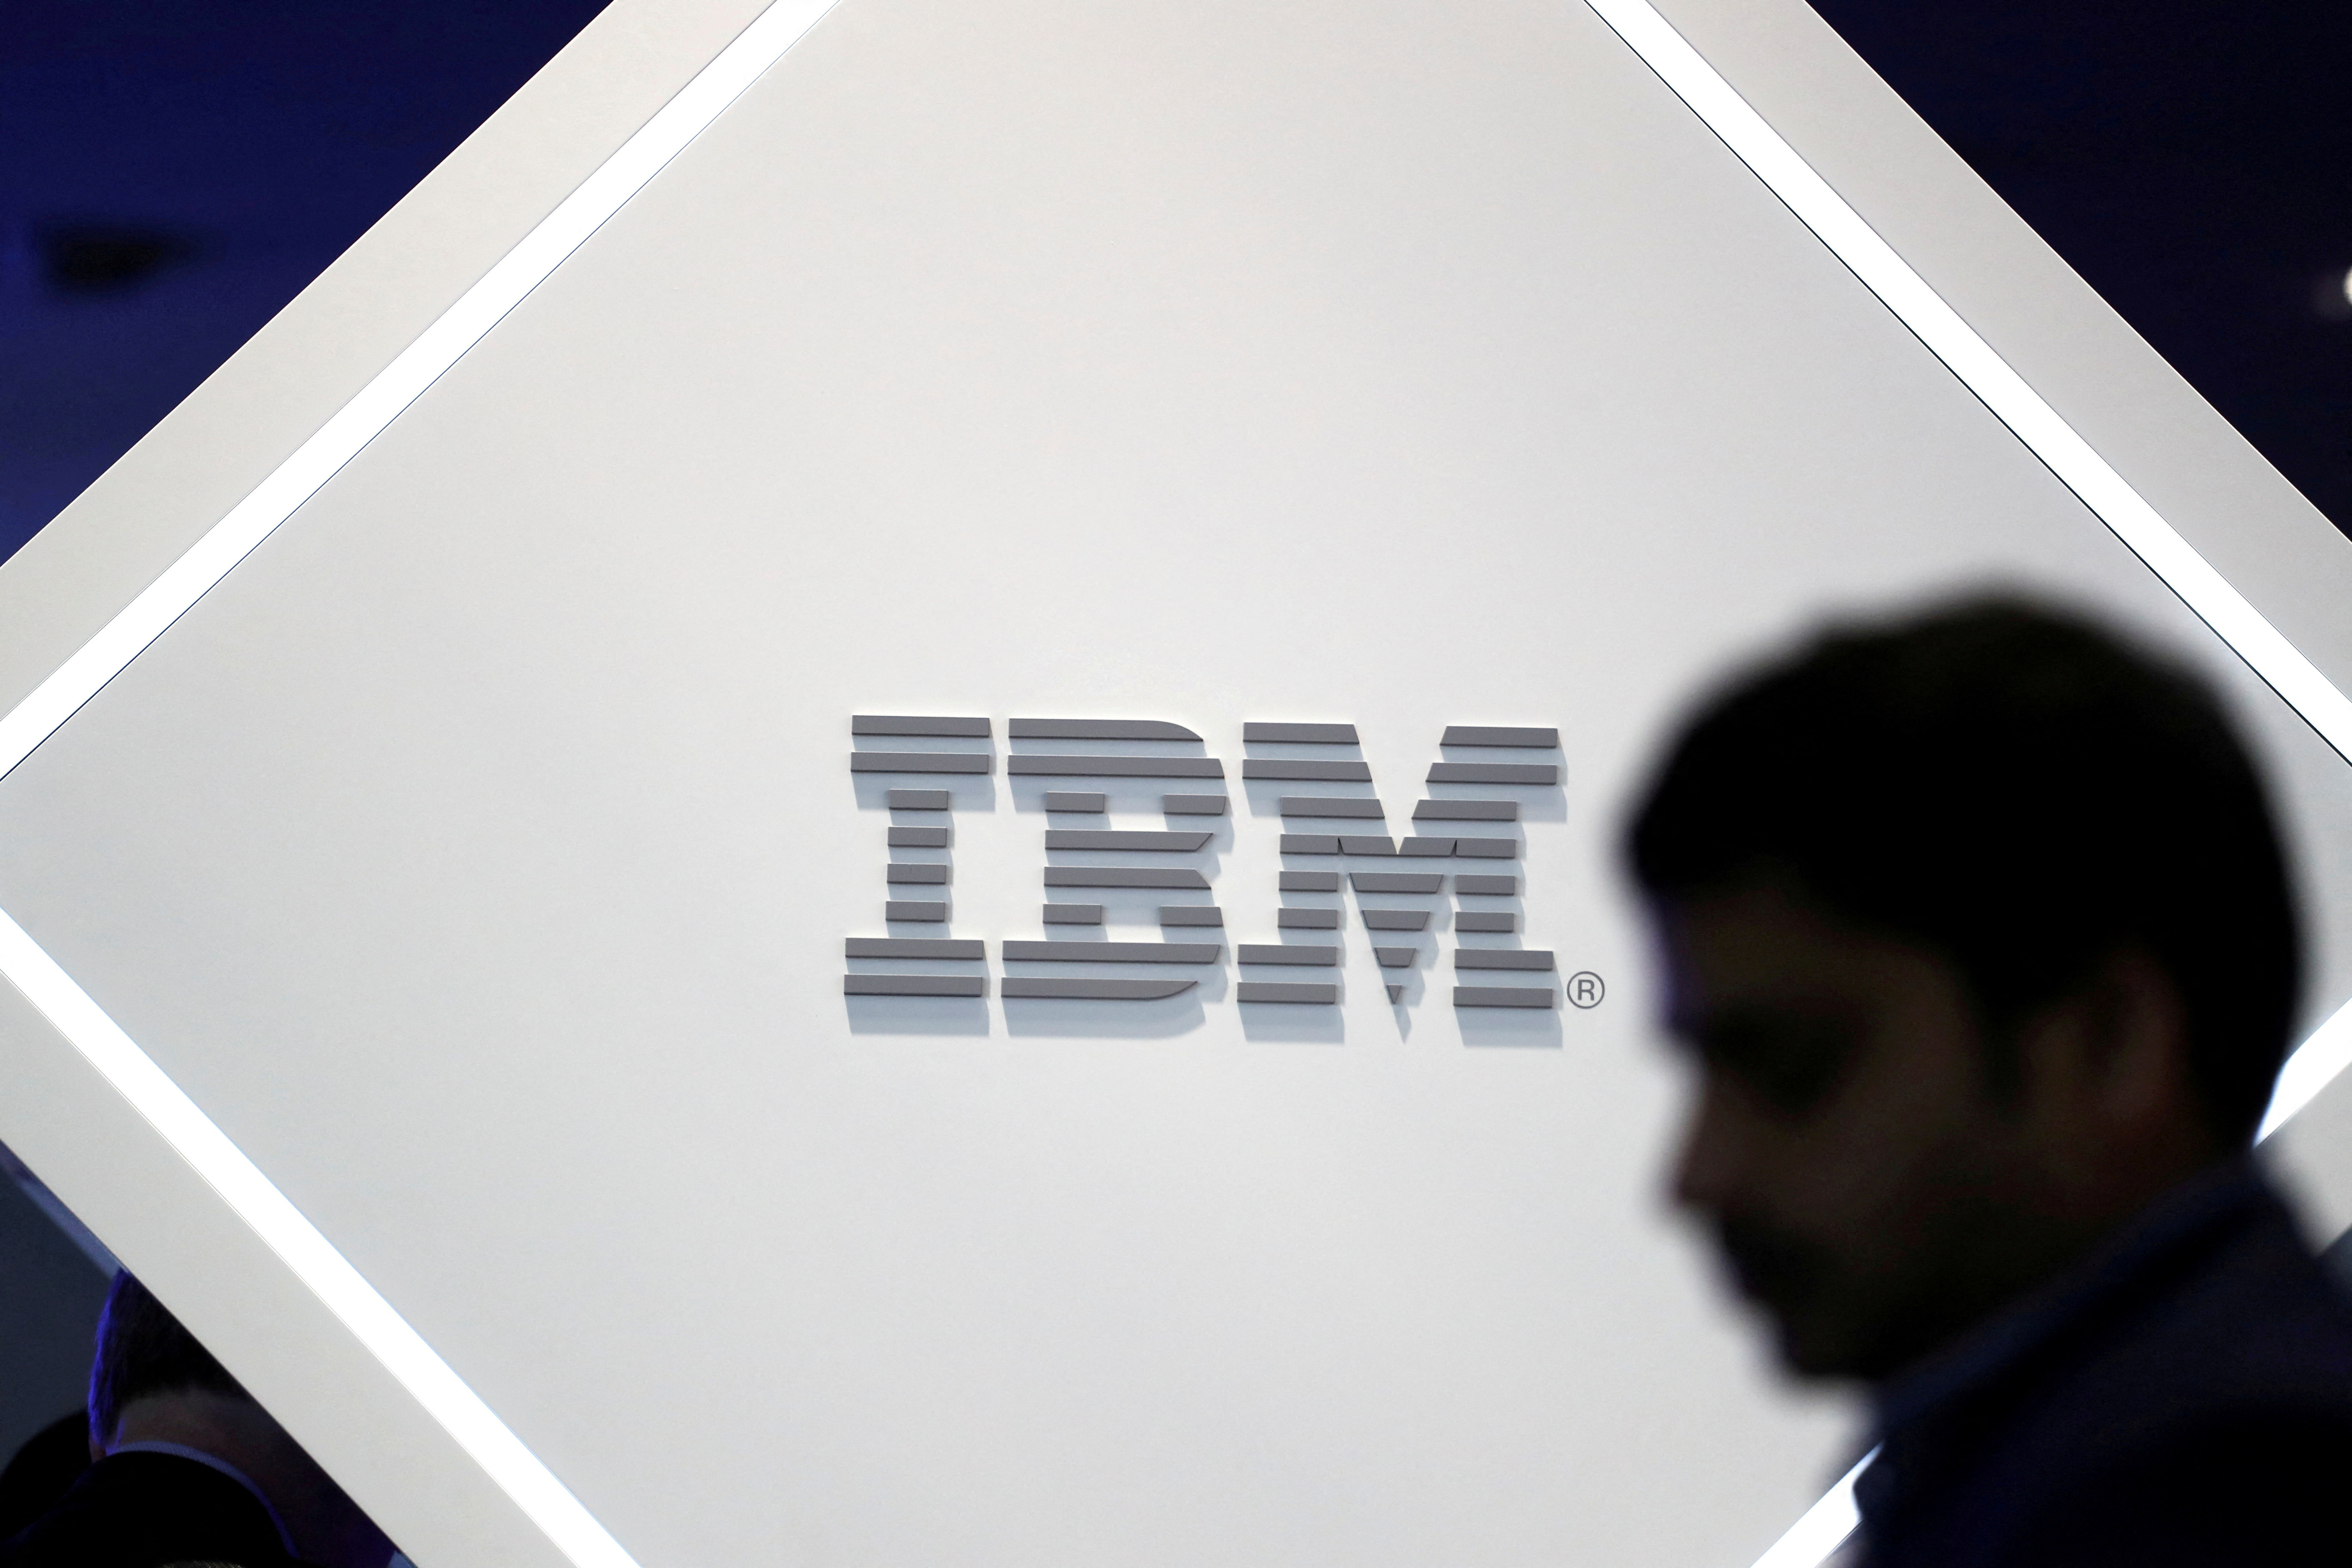 IBM busca empleados en Argentina, tanto perfiles IT como orientados a la finanzas. (REUTERS/Sergio Perez//File Photo)